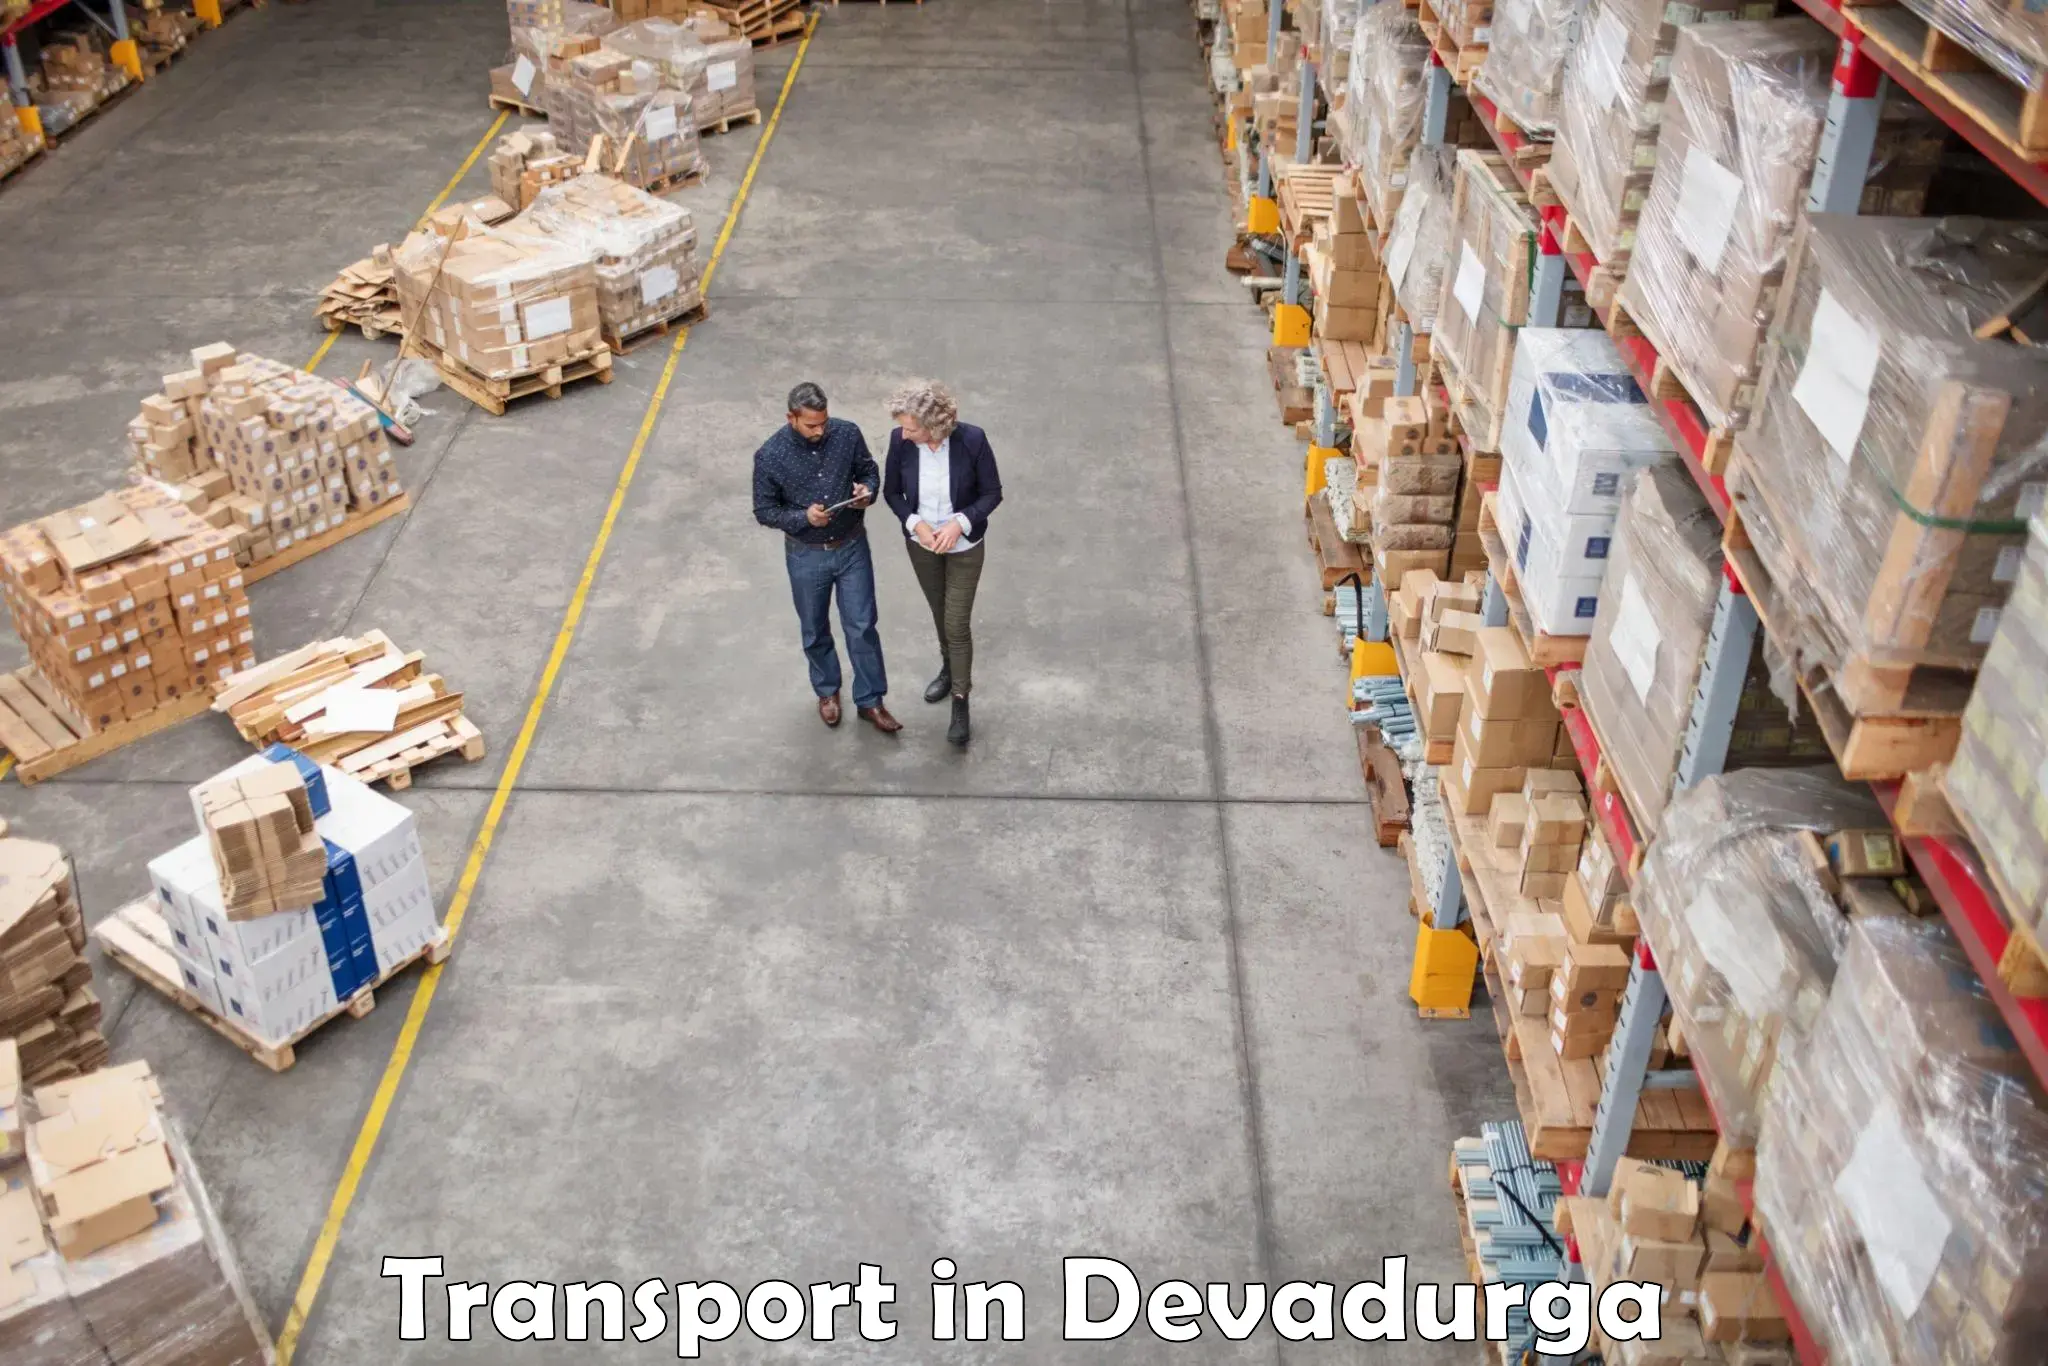 Door to door transport services in Devadurga